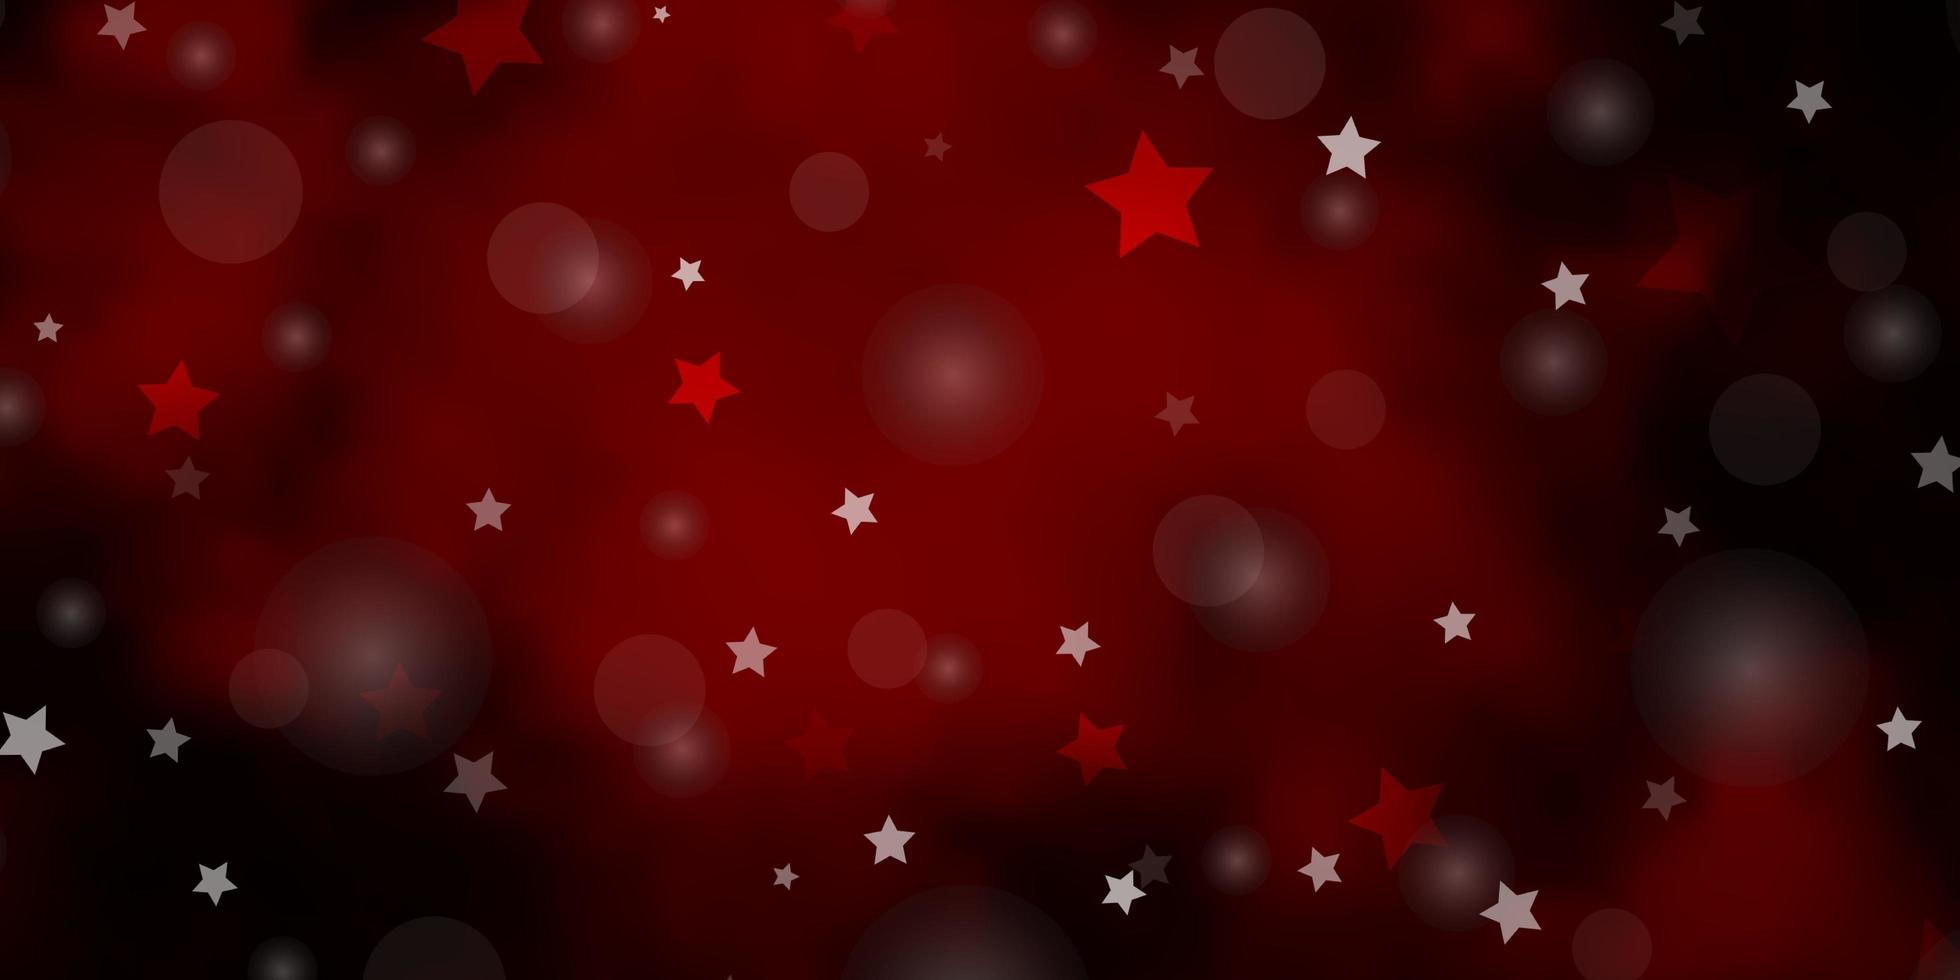 Telón de fondo de vector rojo oscuro con círculos, estrellas.